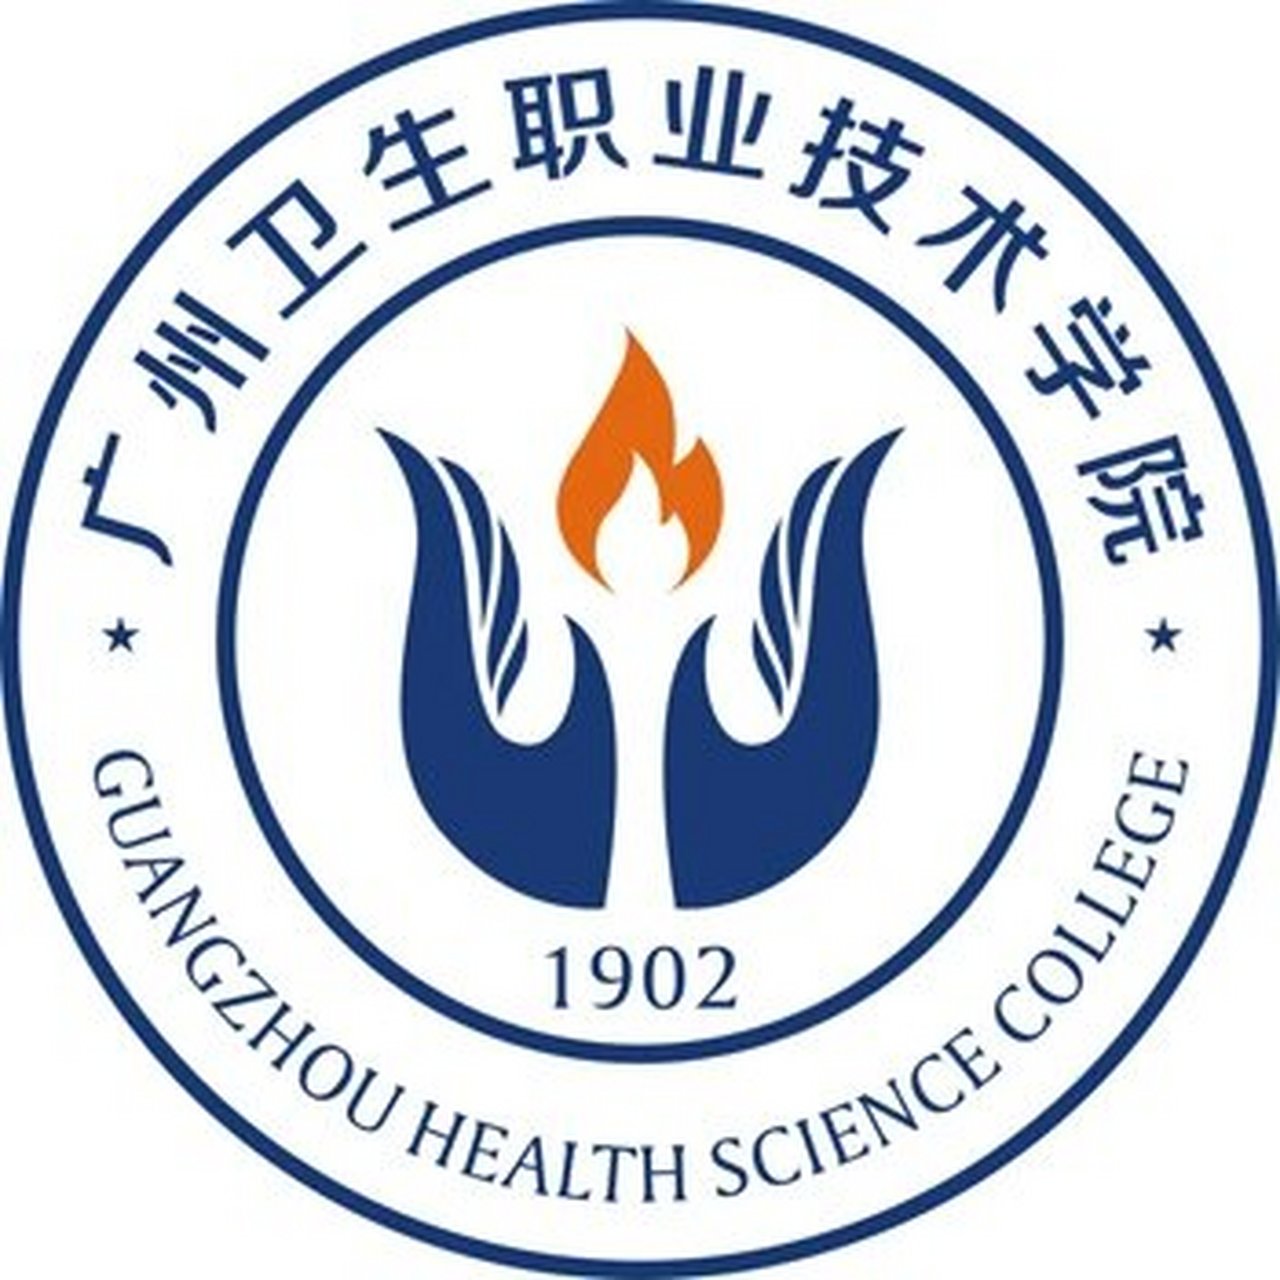 广州城市理工学院校标图片